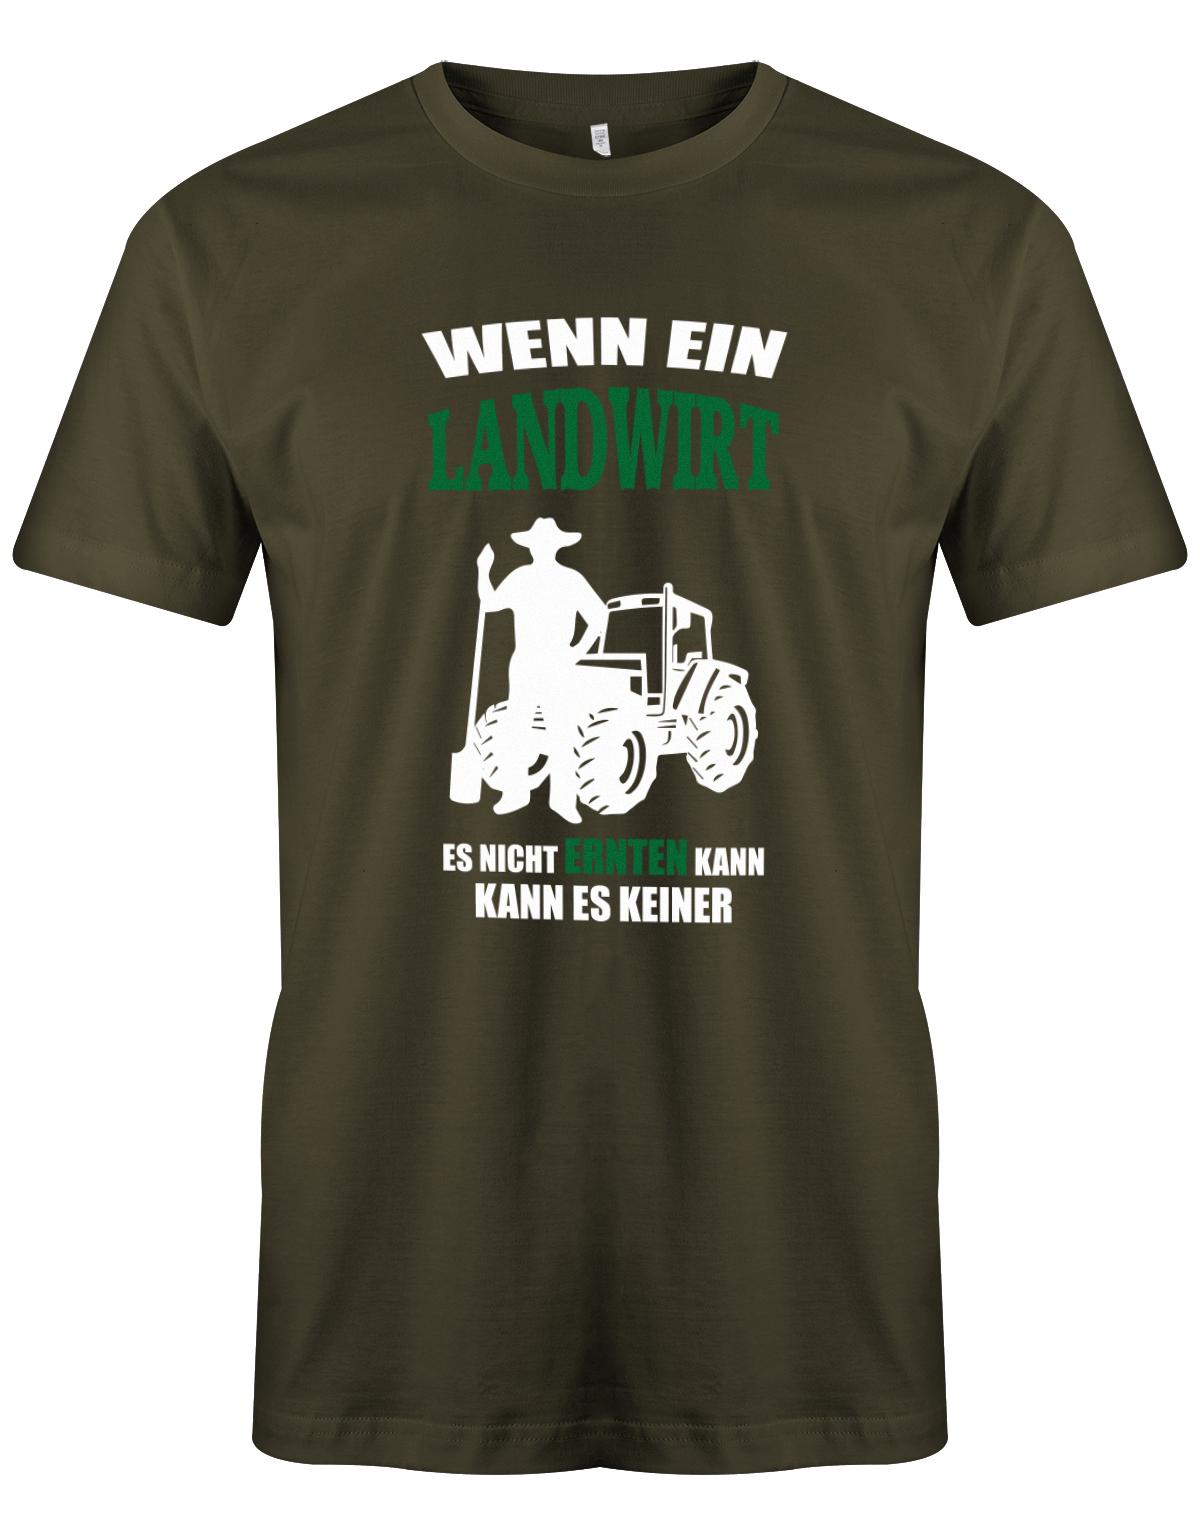 Landwirtschaft Shirt Männer - Wenn ein Landwirt es nicht ernten kann. Kann es keiner Army